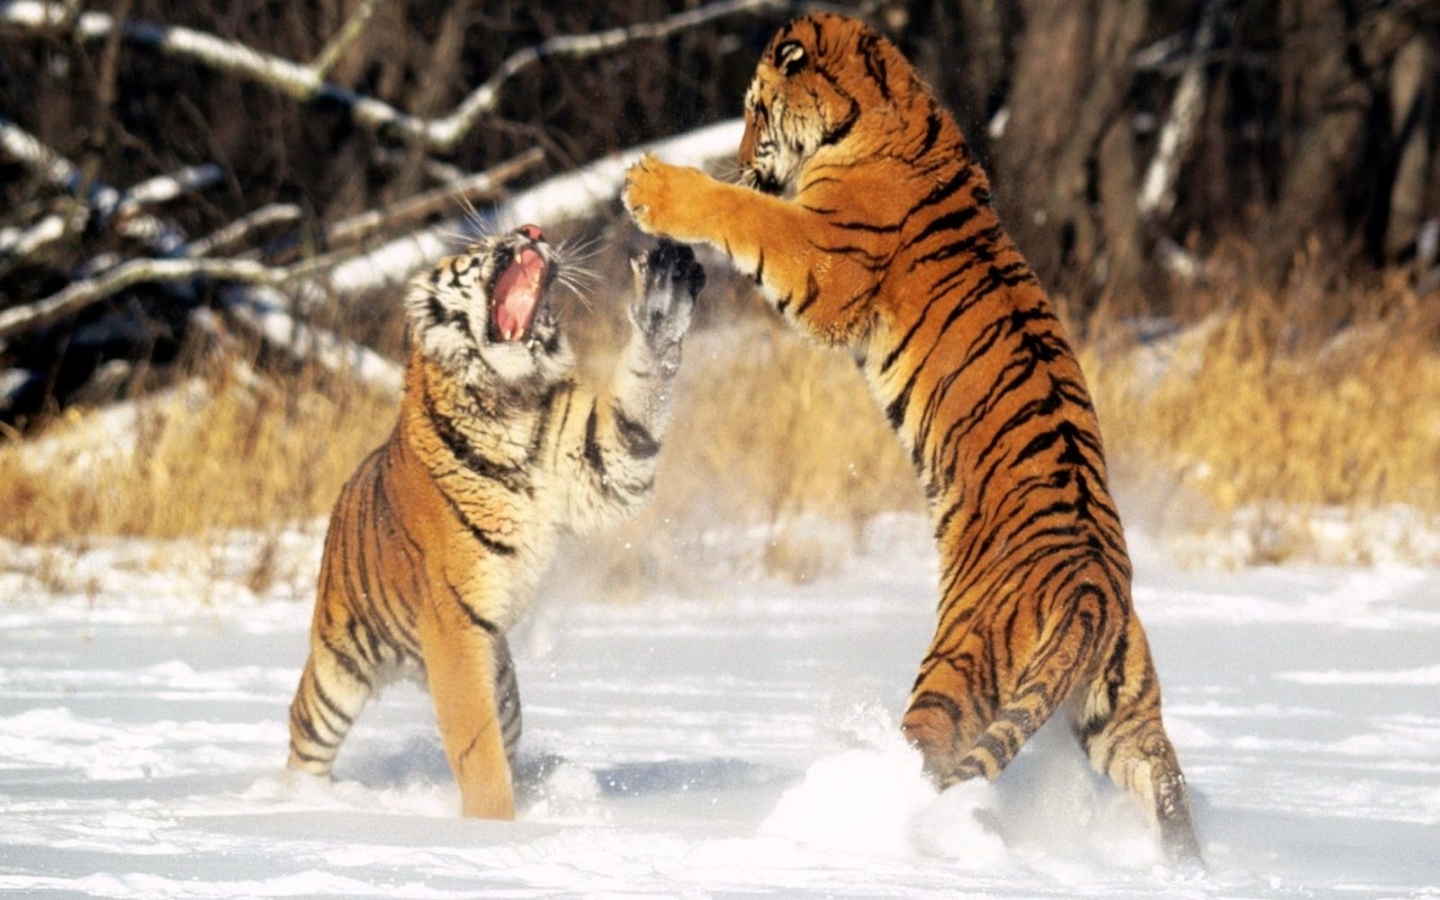 Скачать картинку Животные, Тигры в телефон бесплатно.